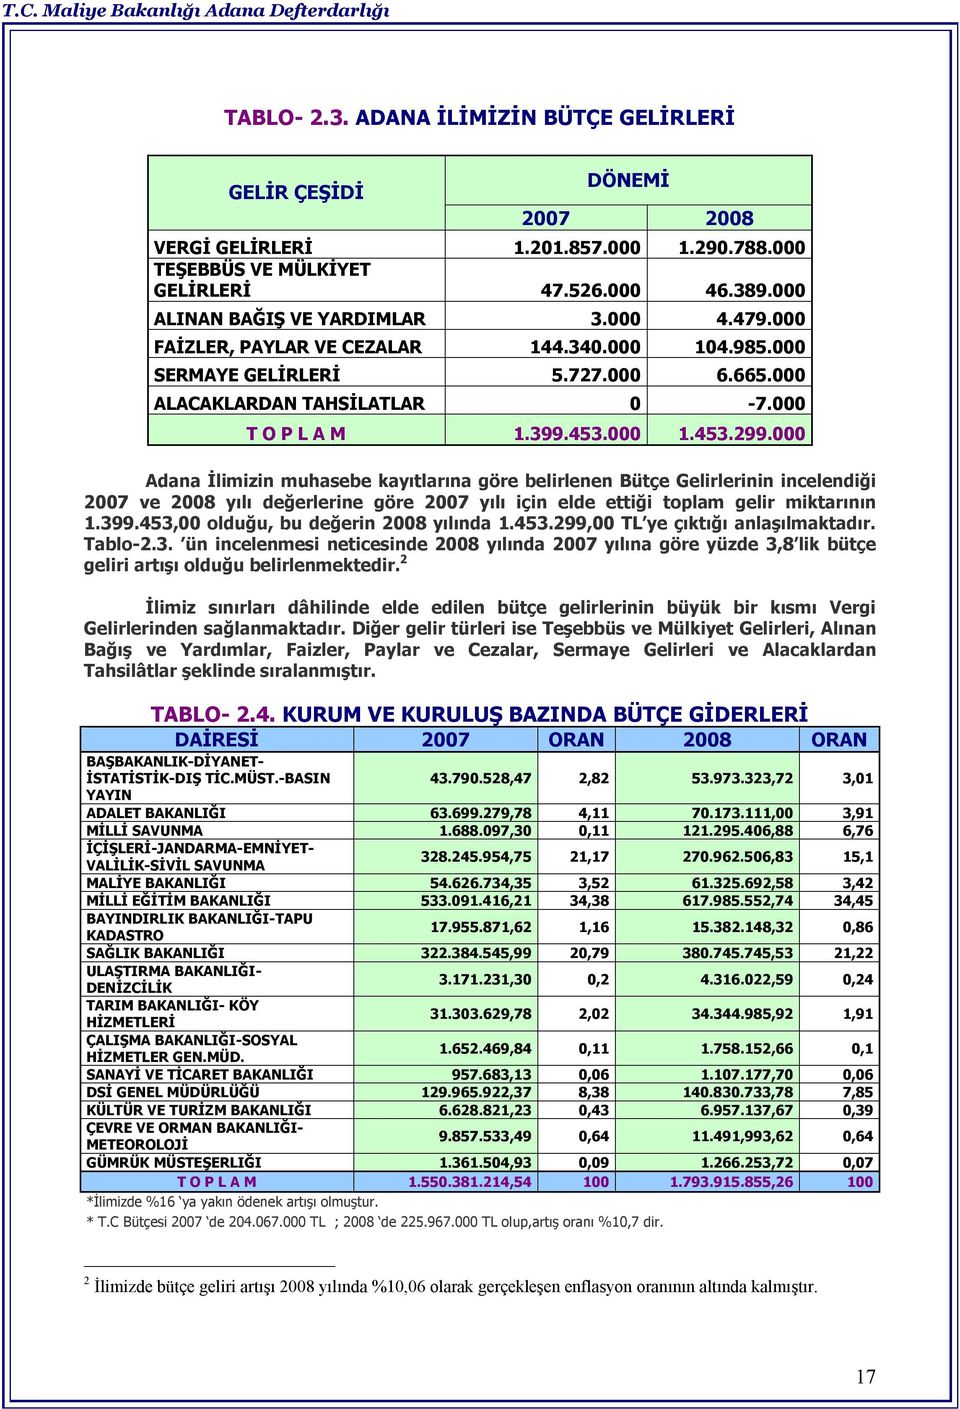 000 Adana İlimizin muhasebe kayıtlarına göre belirlenen Bütçe Gelirlerinin incelendiği 2007 ve 2008 yılı değerlerine göre 2007 yılı için elde ettiği toplam gelir miktarının 1.399.